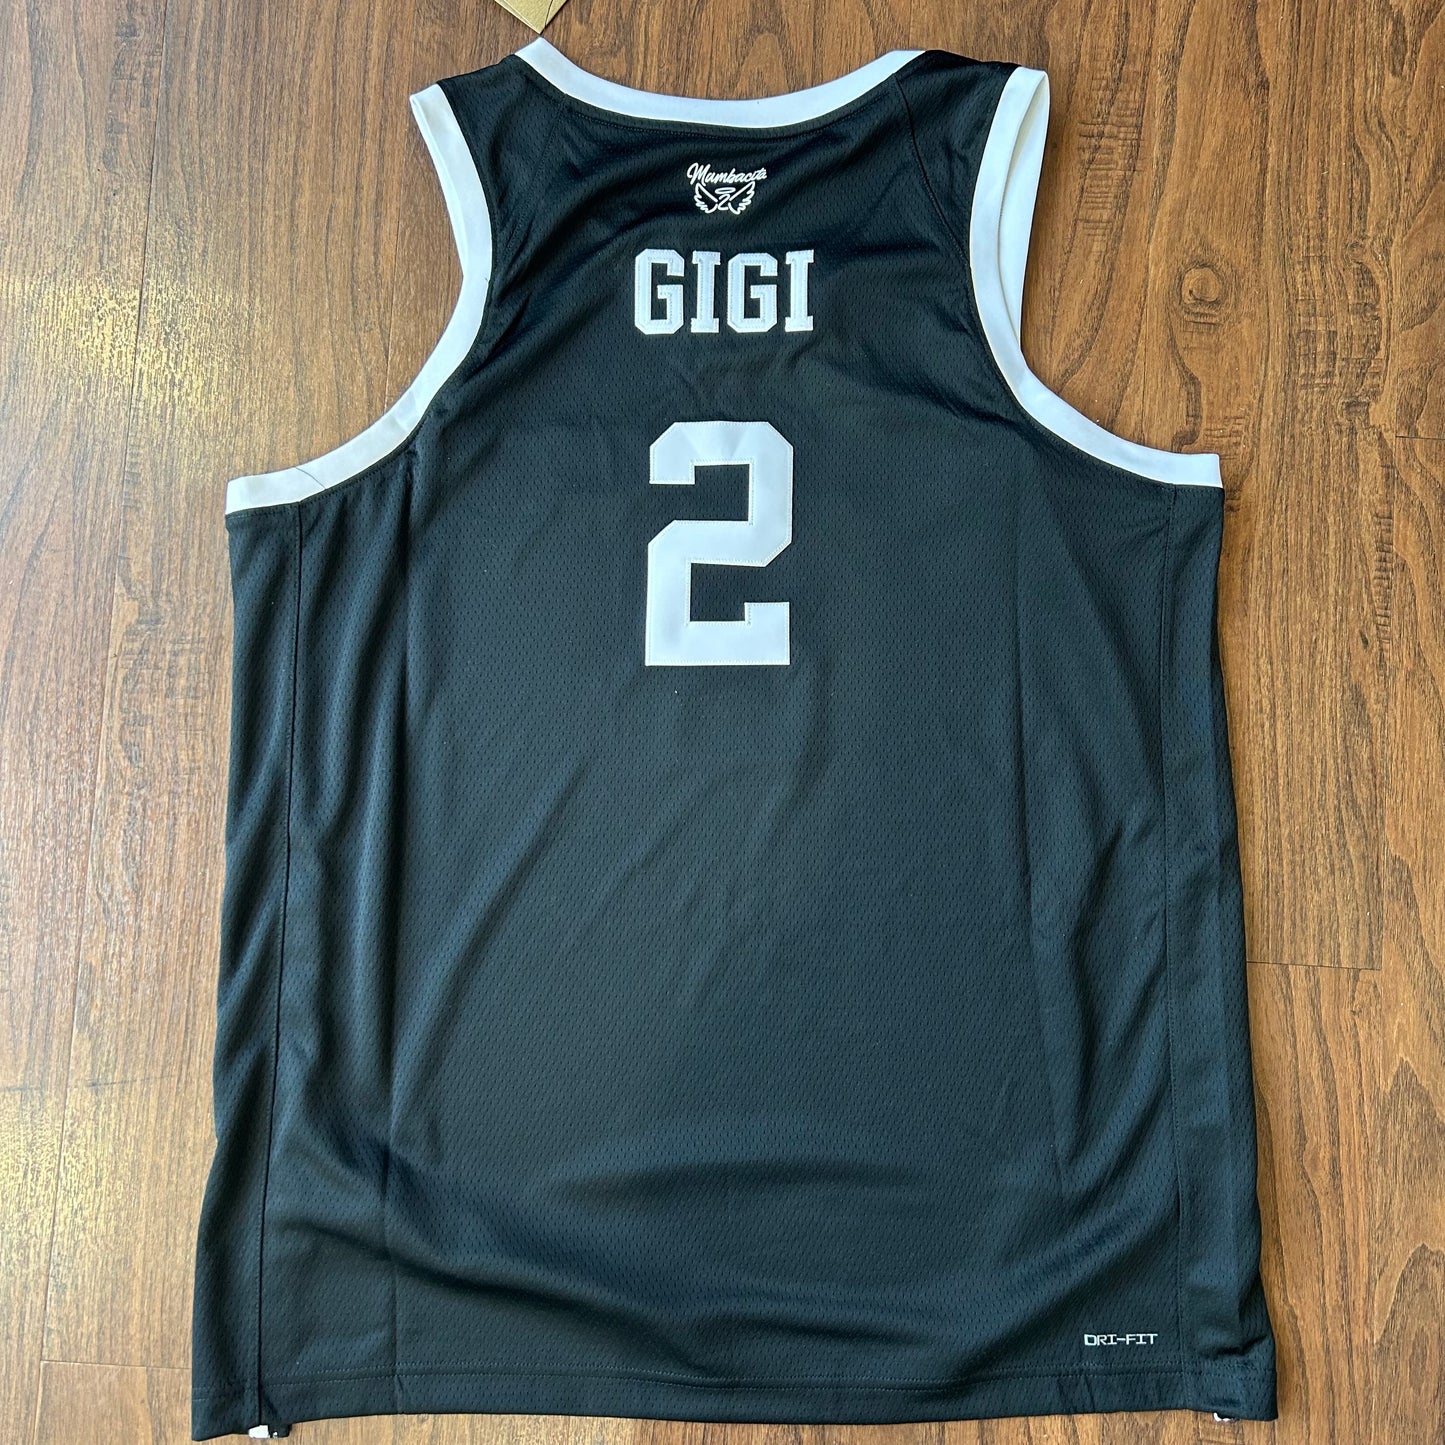 Nike MAMBA Gigi Jersey Black